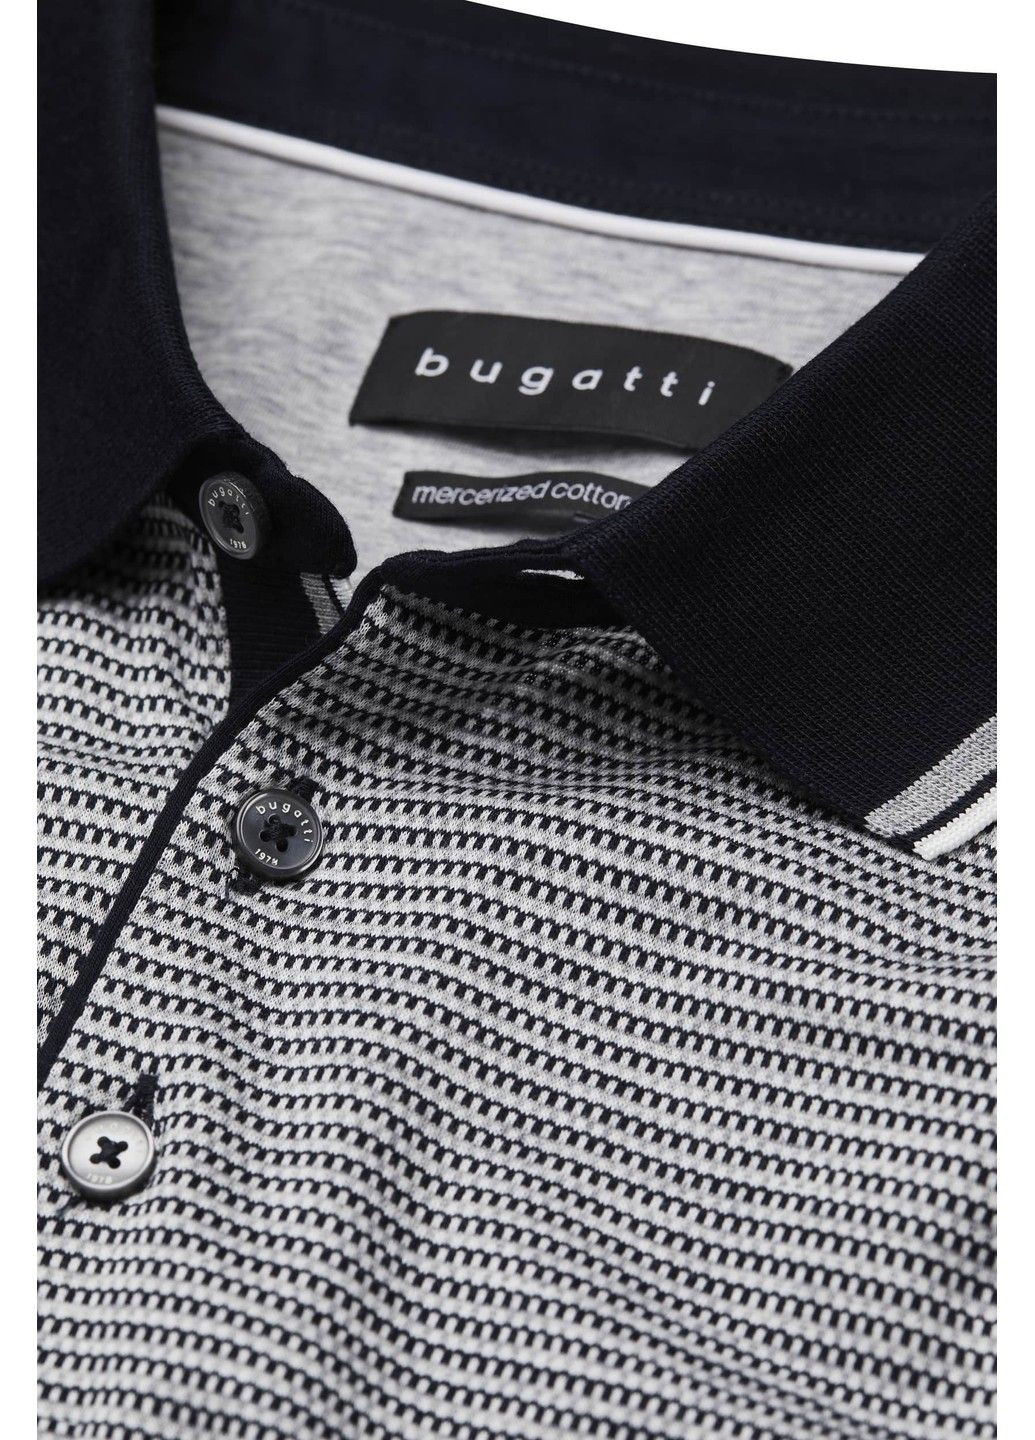 Серая футболка-мужское поло серый для мужчин Bugatti однотонная